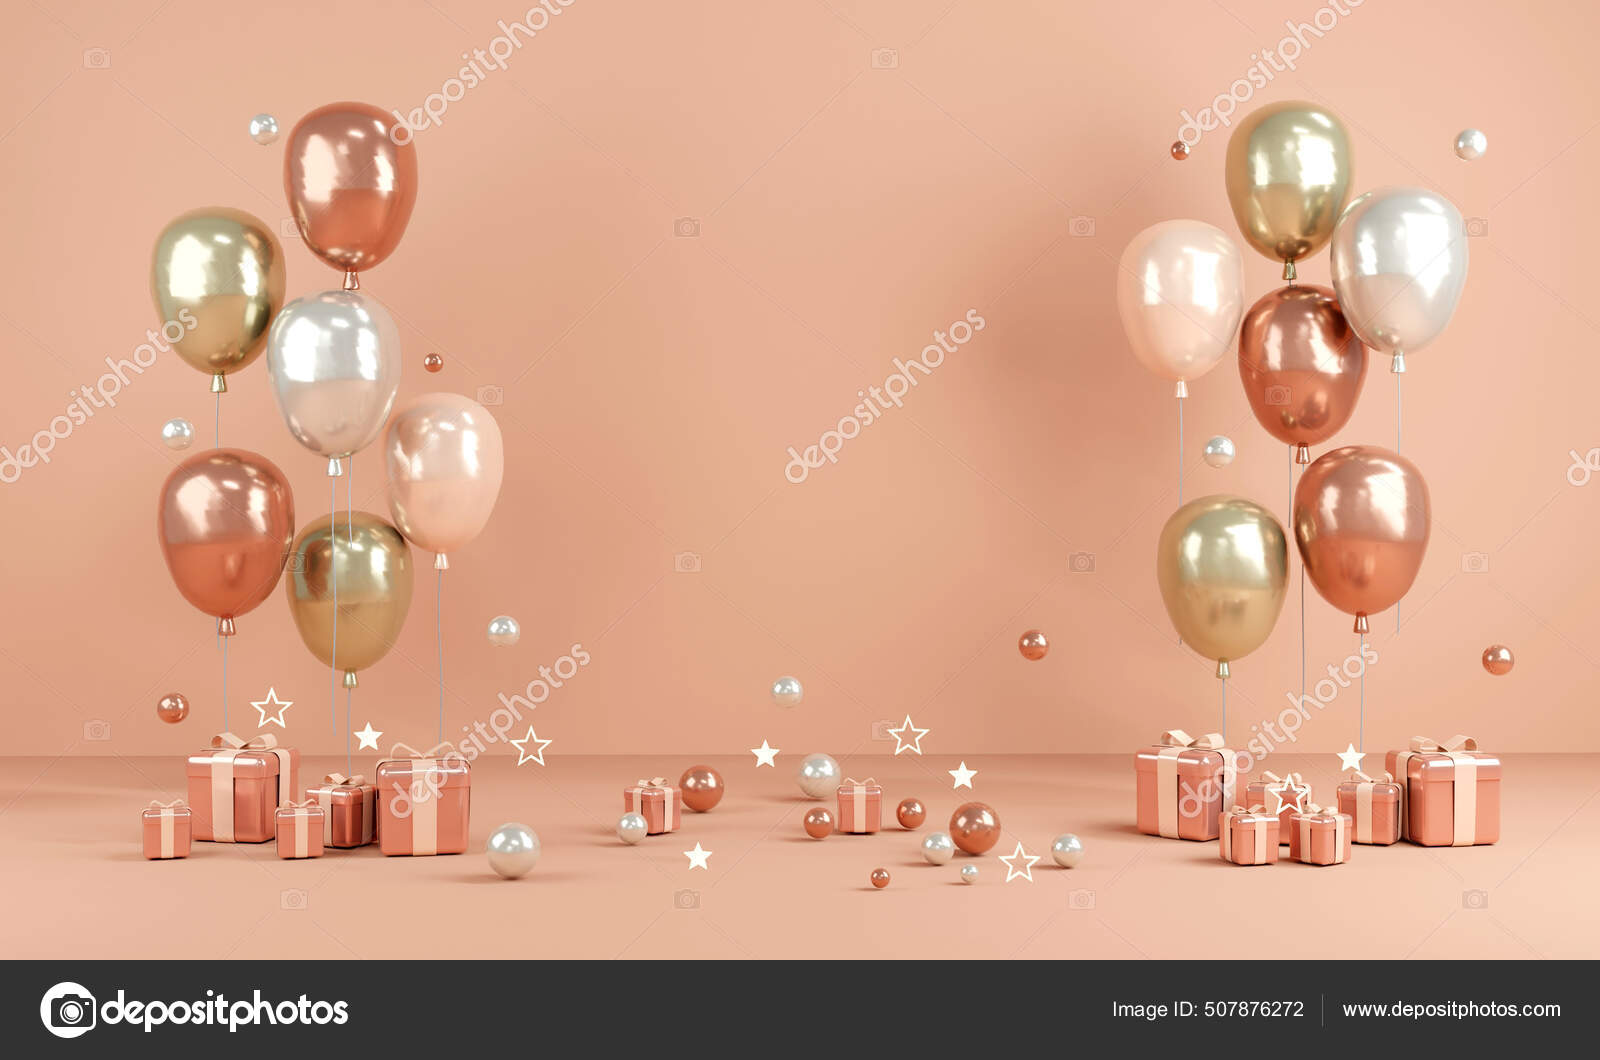 Illustration horizontale de joyeux anniversaire avec ballon rose et violet  réaliste 3d et confitti